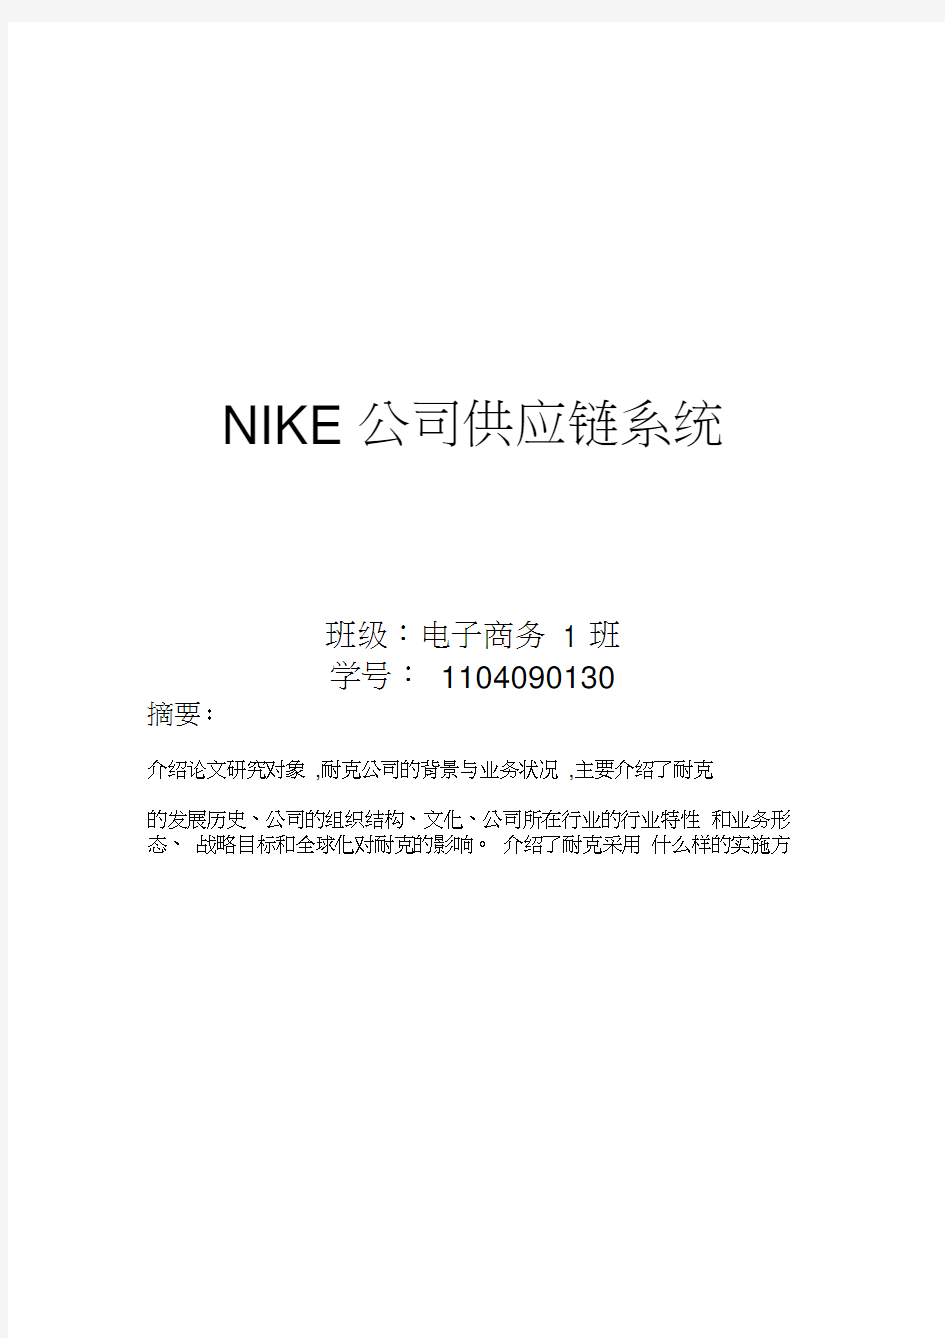 Nike公司供应链系统